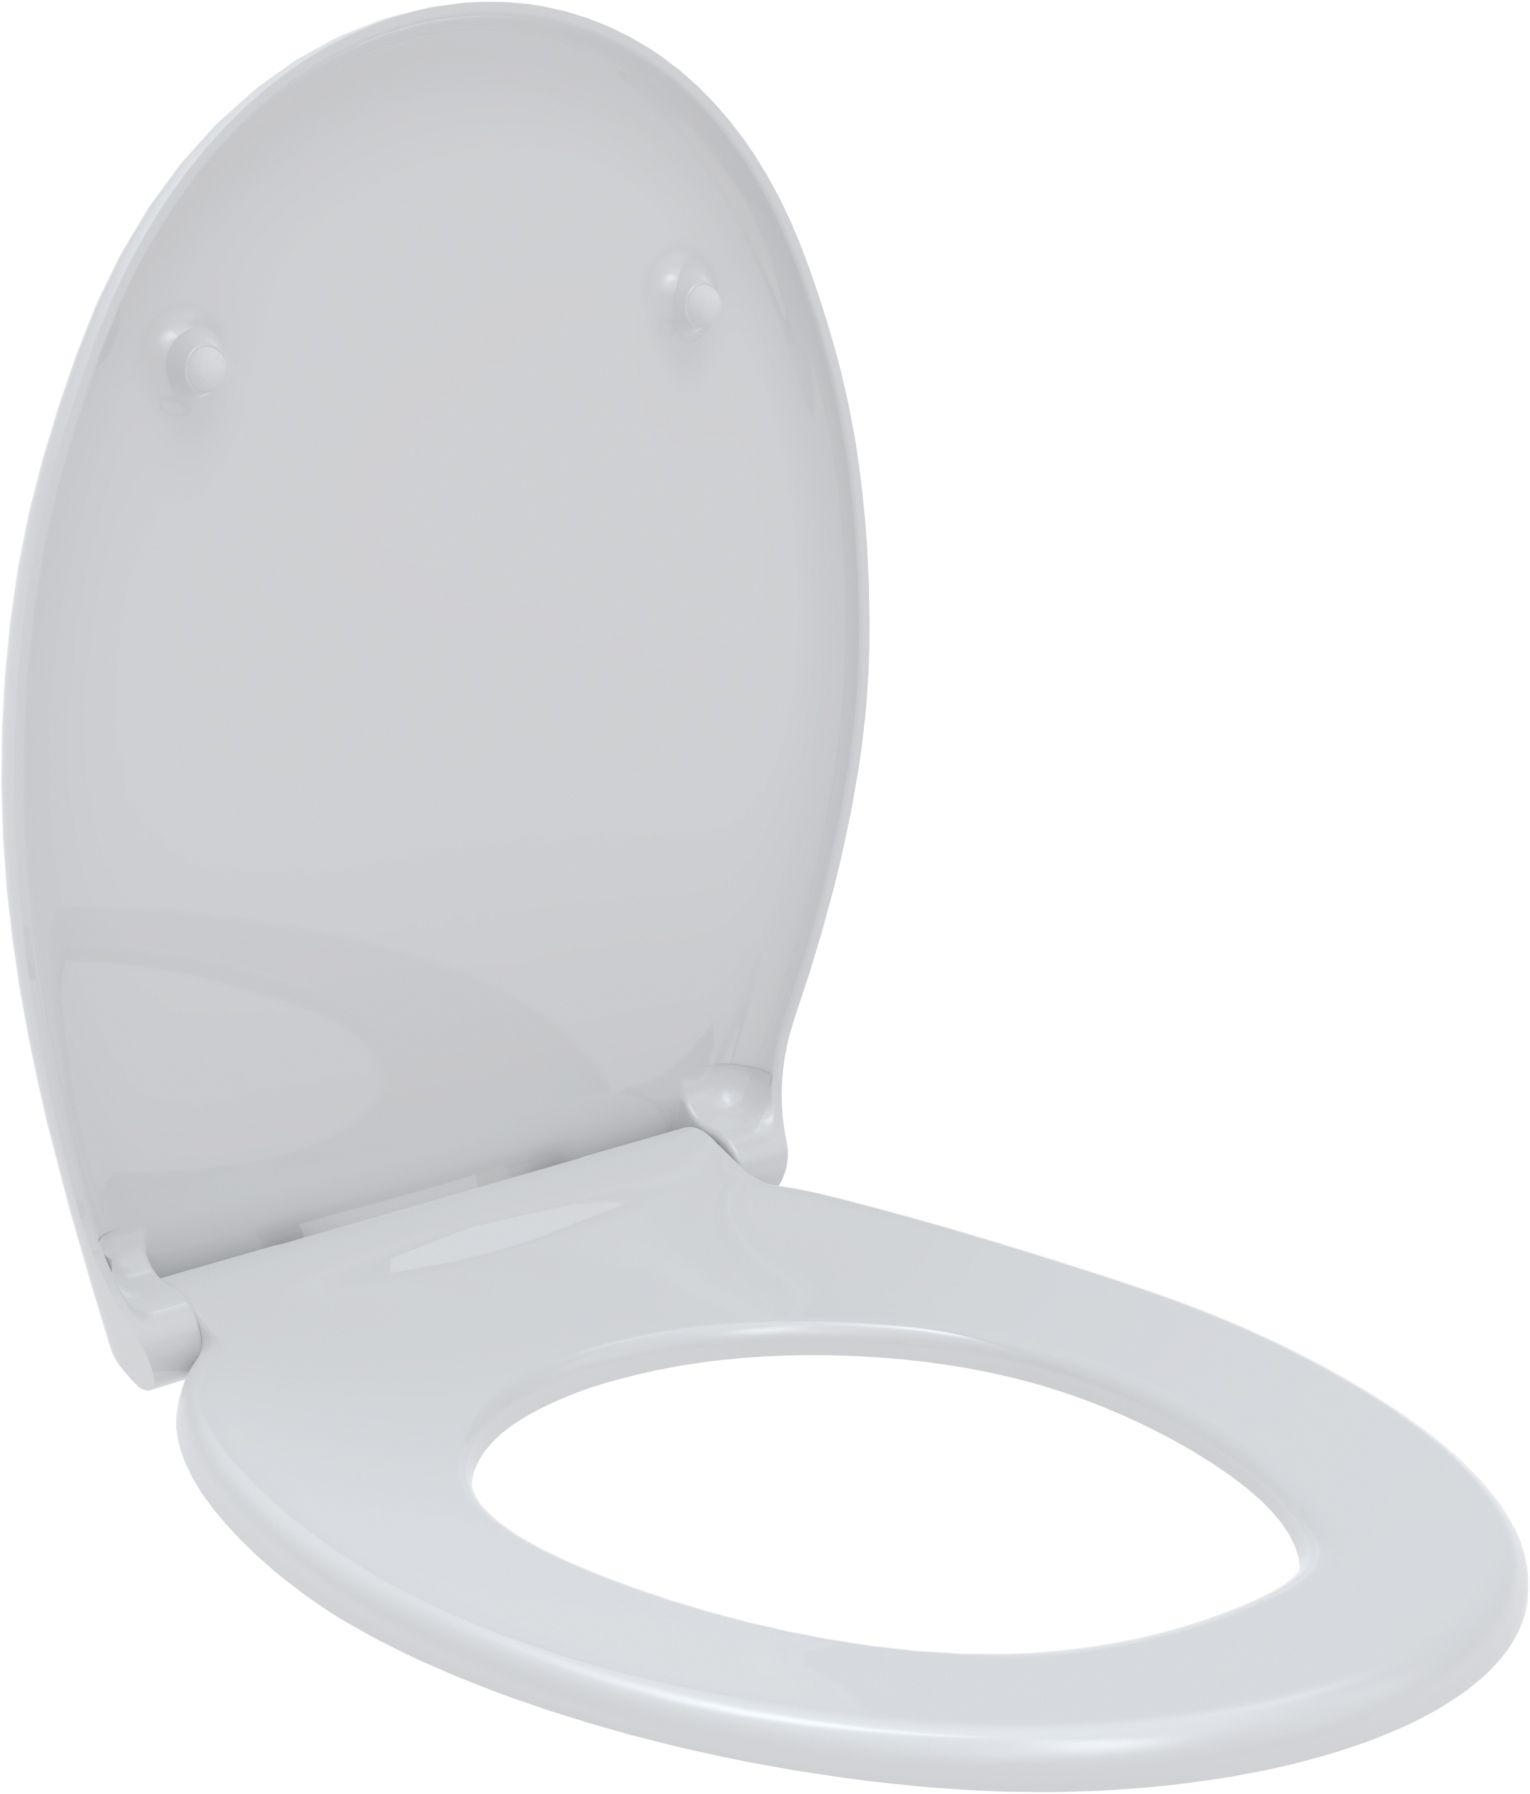 Toilet seat LIBRA, white